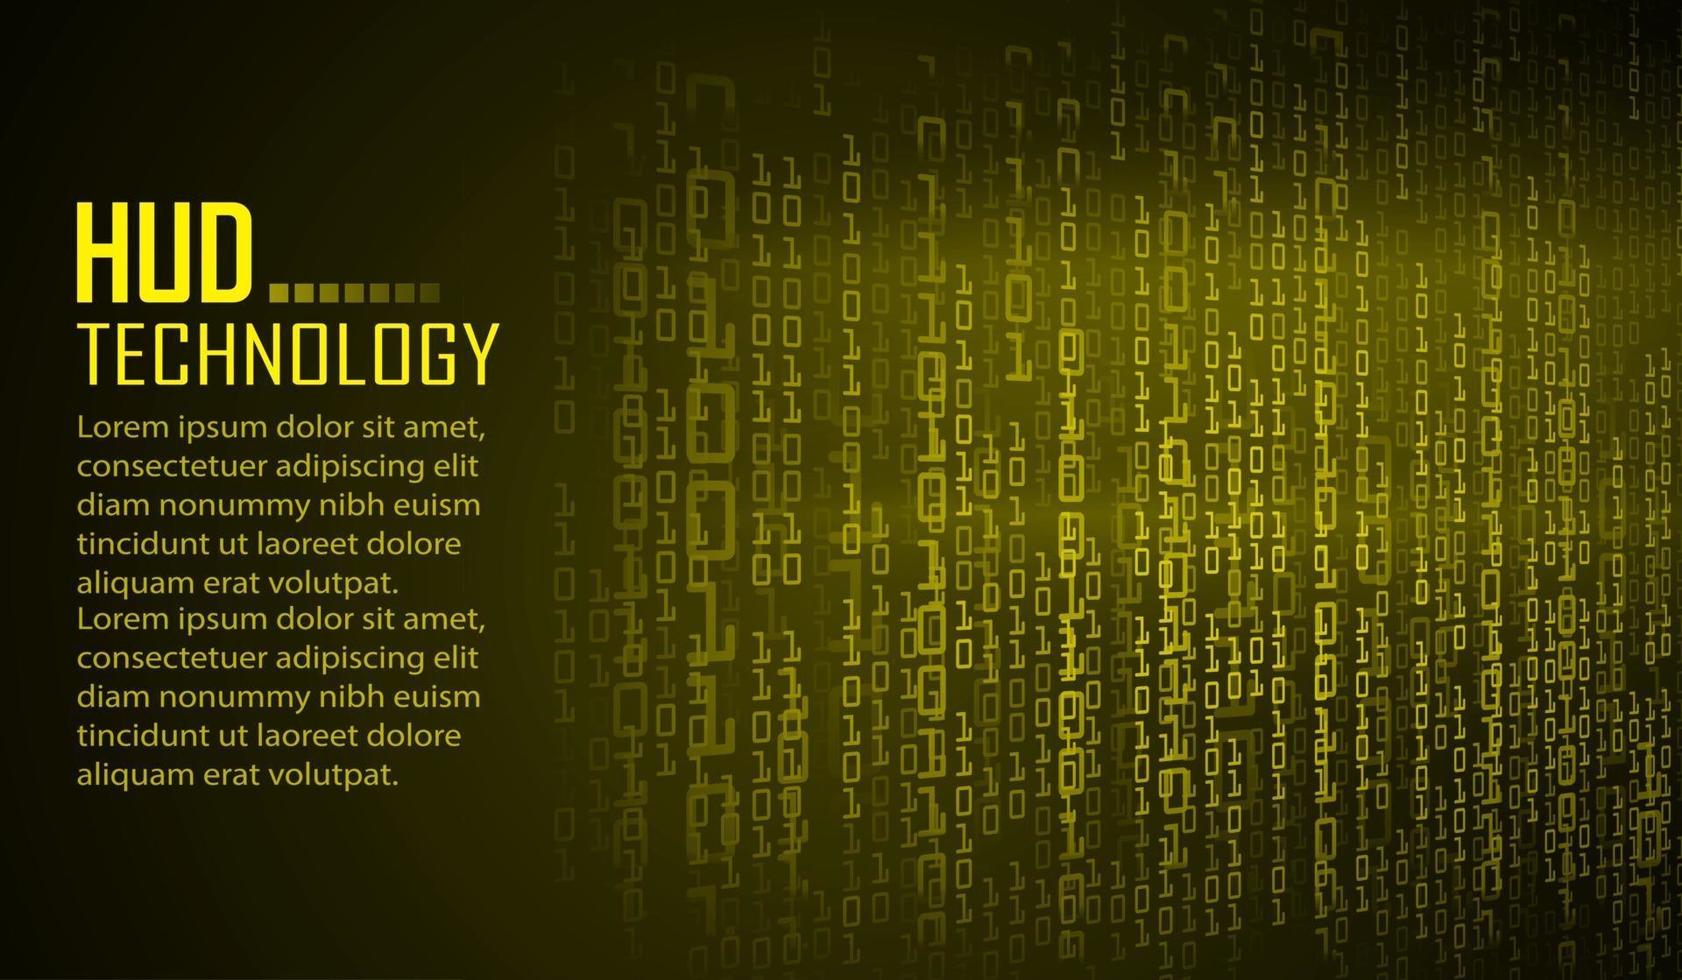 Cyber Circuit Future Technology Konzept Hintergrund vektor